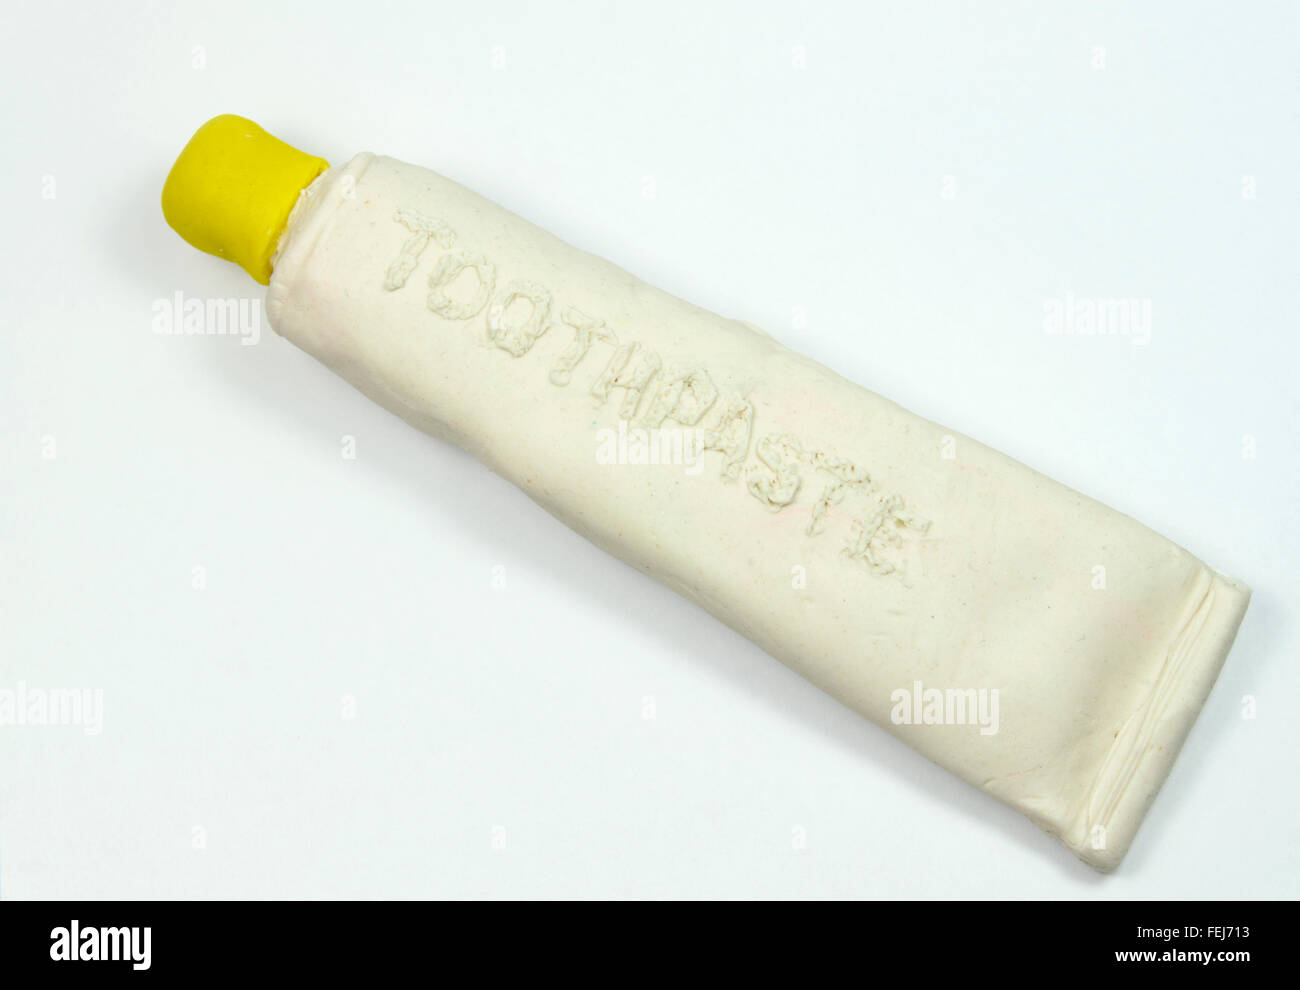 Tube de dentifrice imitation fabriqués à partir de play doh. Banque D'Images